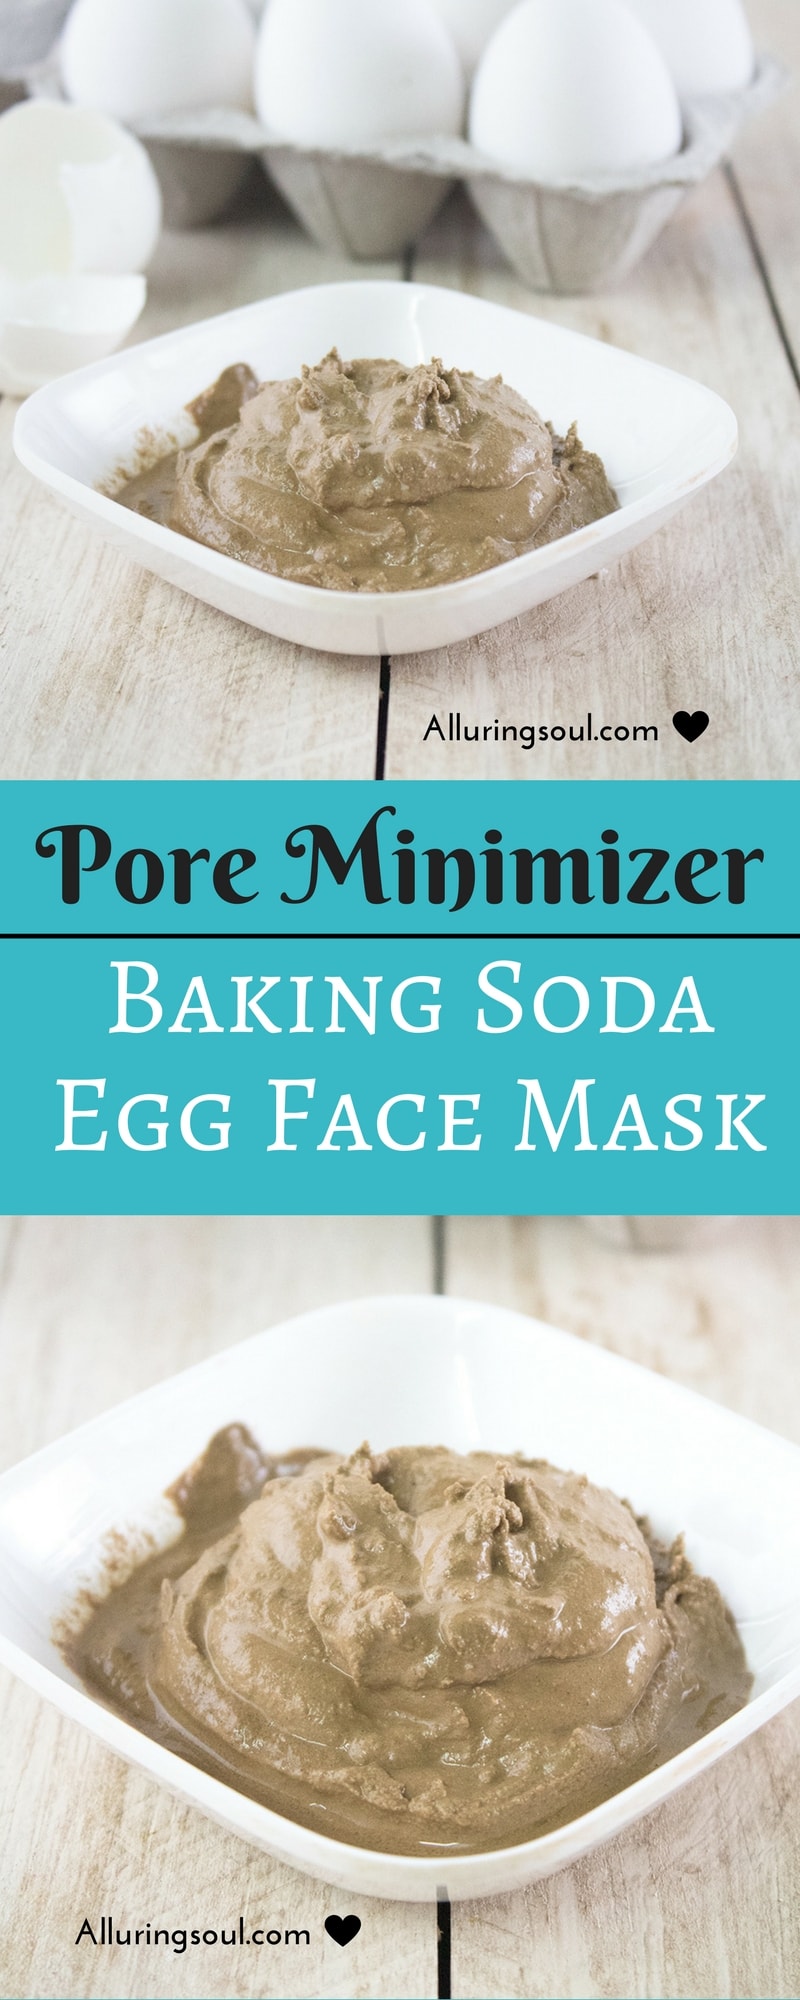 pore minimizer egg face mask